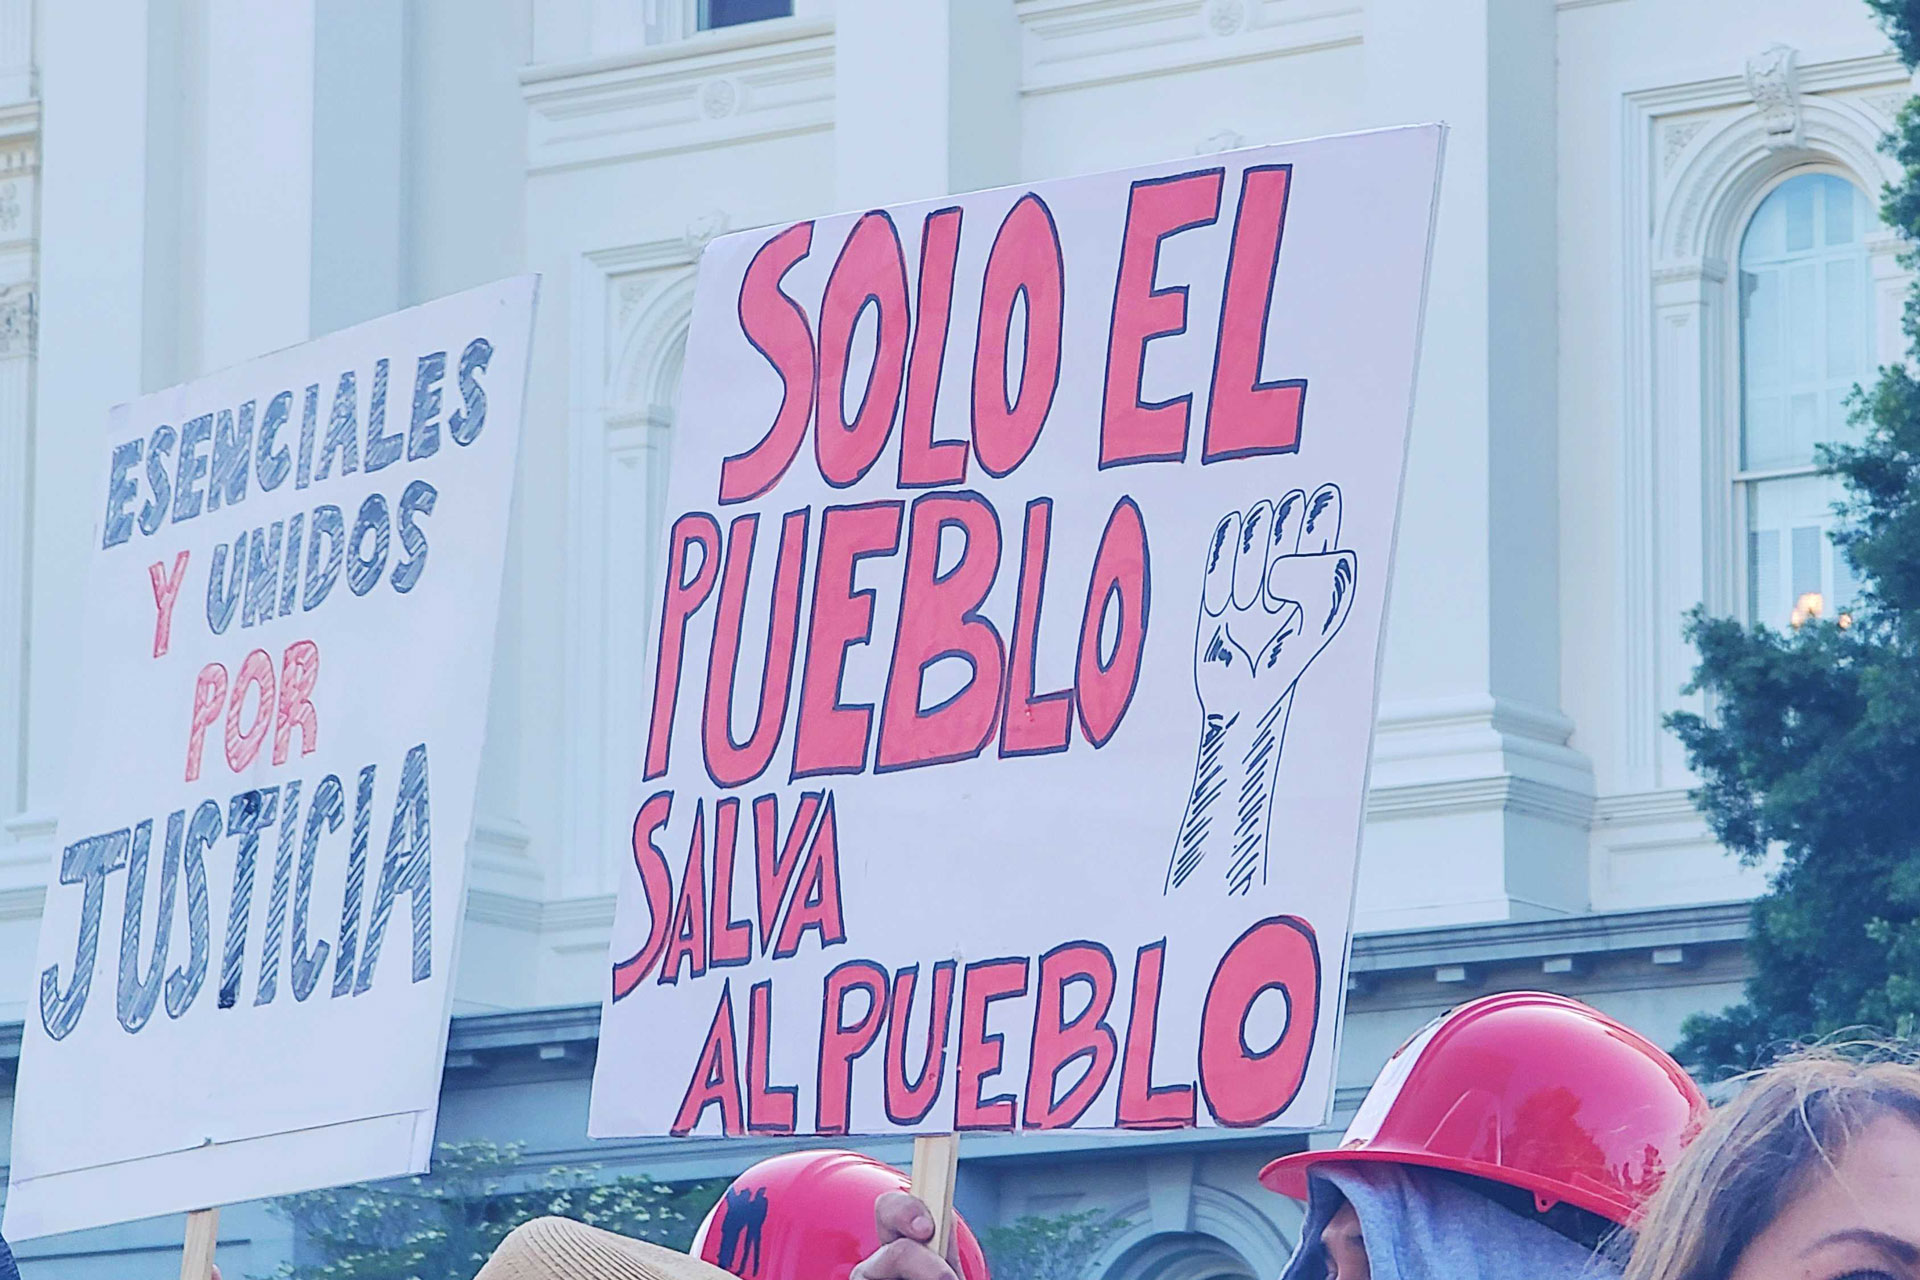 A sign that says "Solo el Pueblo/Salva Al Pueblo"